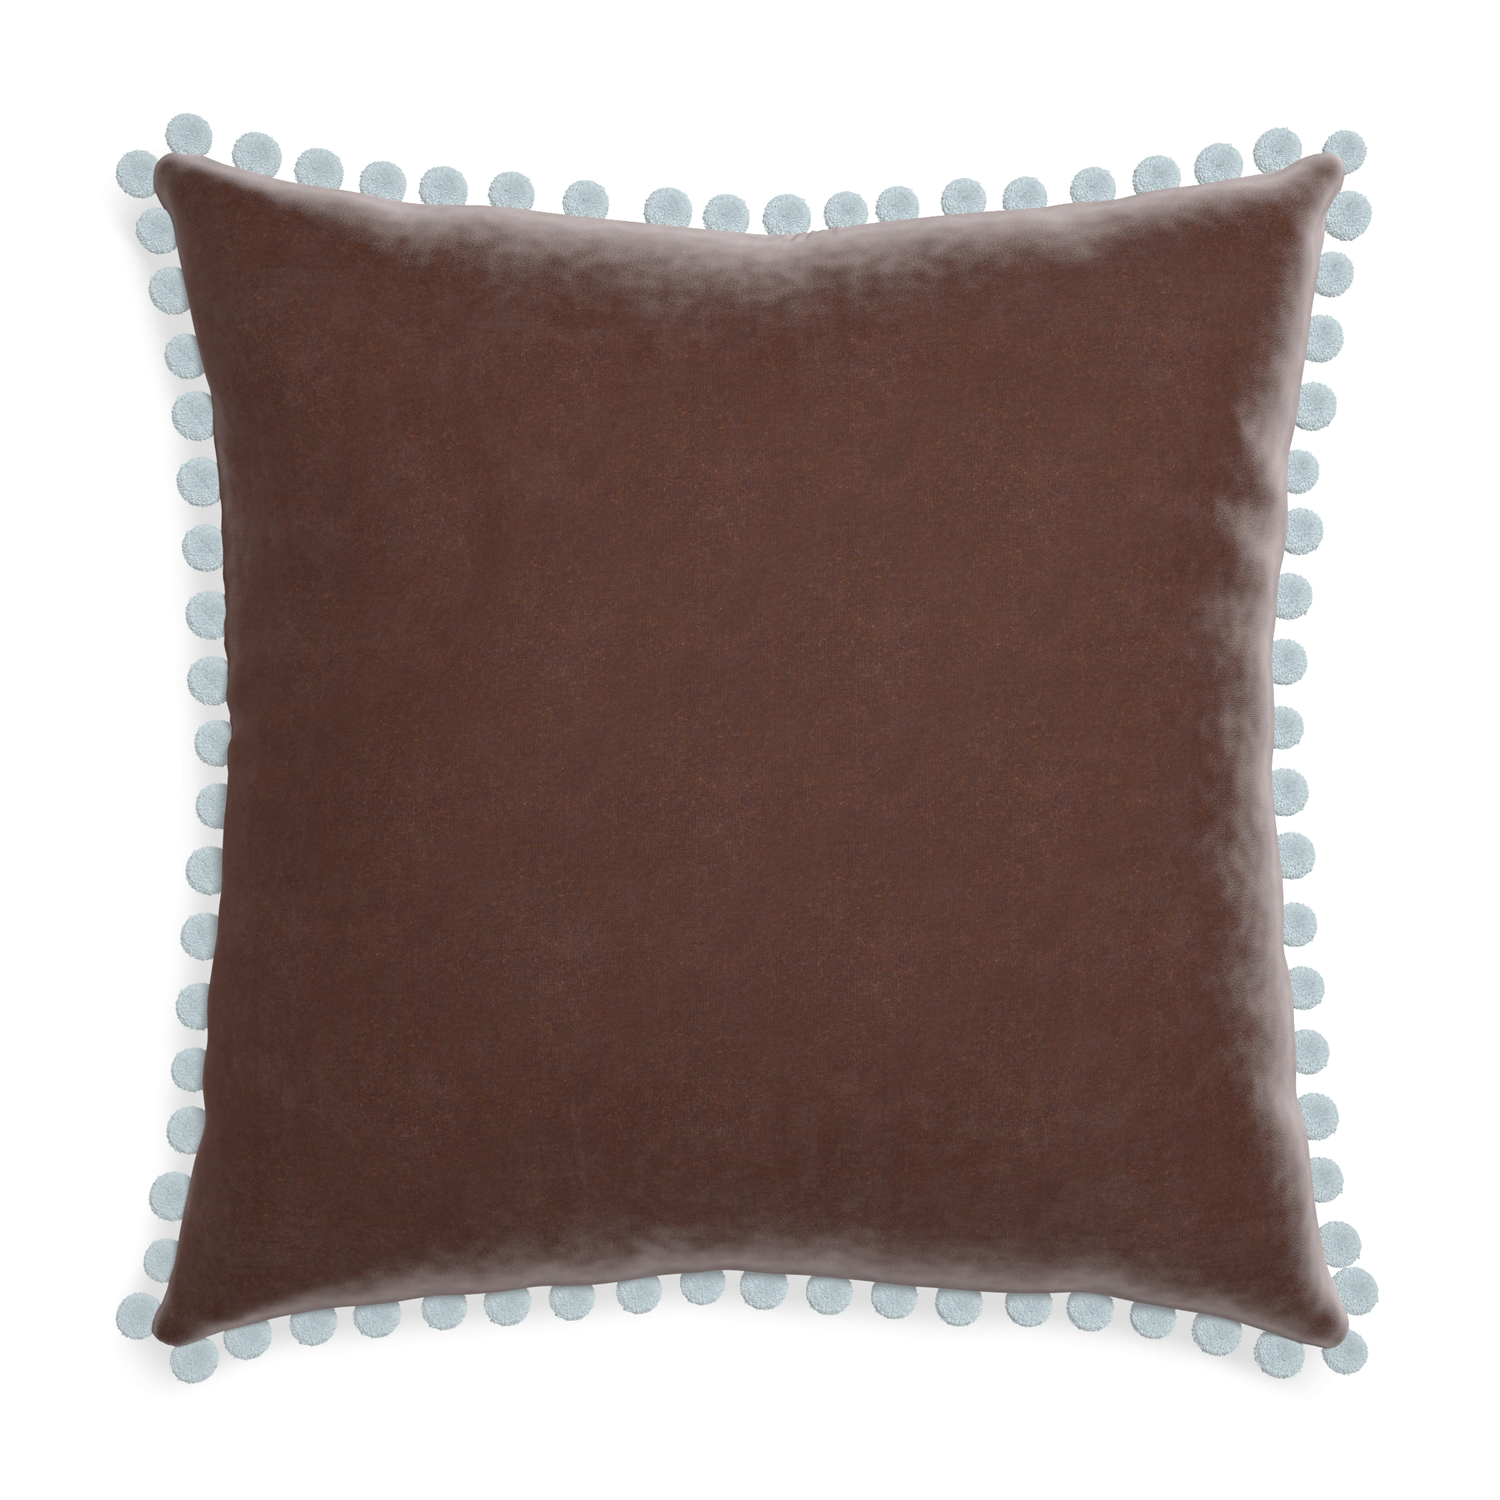 Euro-sham walnut velvet custom pillow with powder pom pom on white background